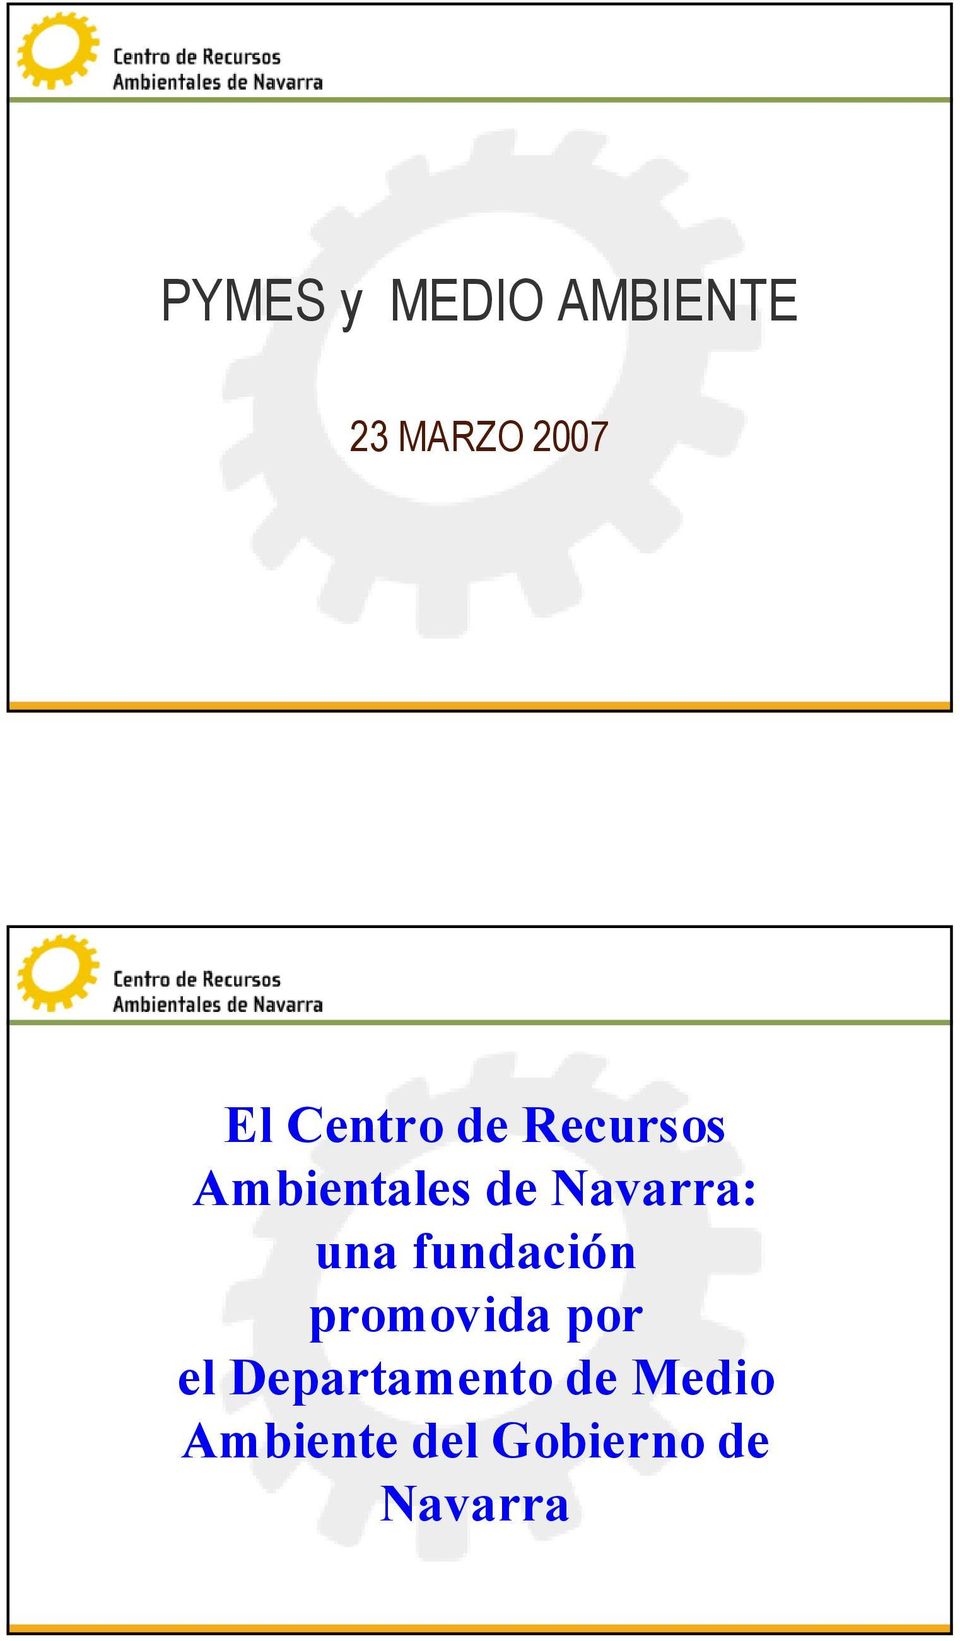 Navarra: una fundación promovida por el